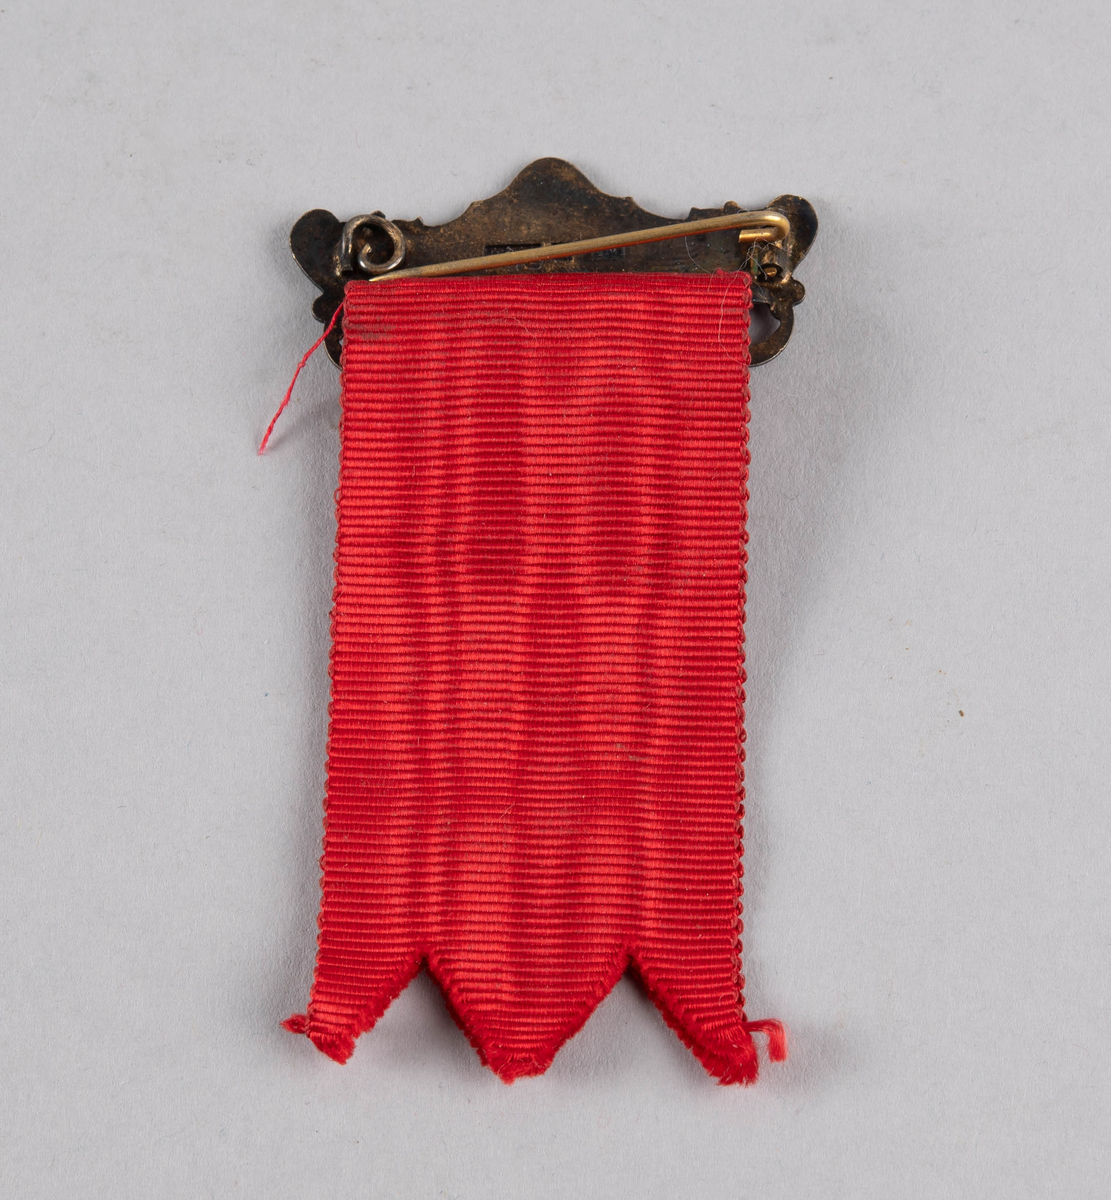 Liten medalje med form som et nyrebekken festet til nål og silkebånd. Ligger i en gjennomsiktig eske av hardplast.